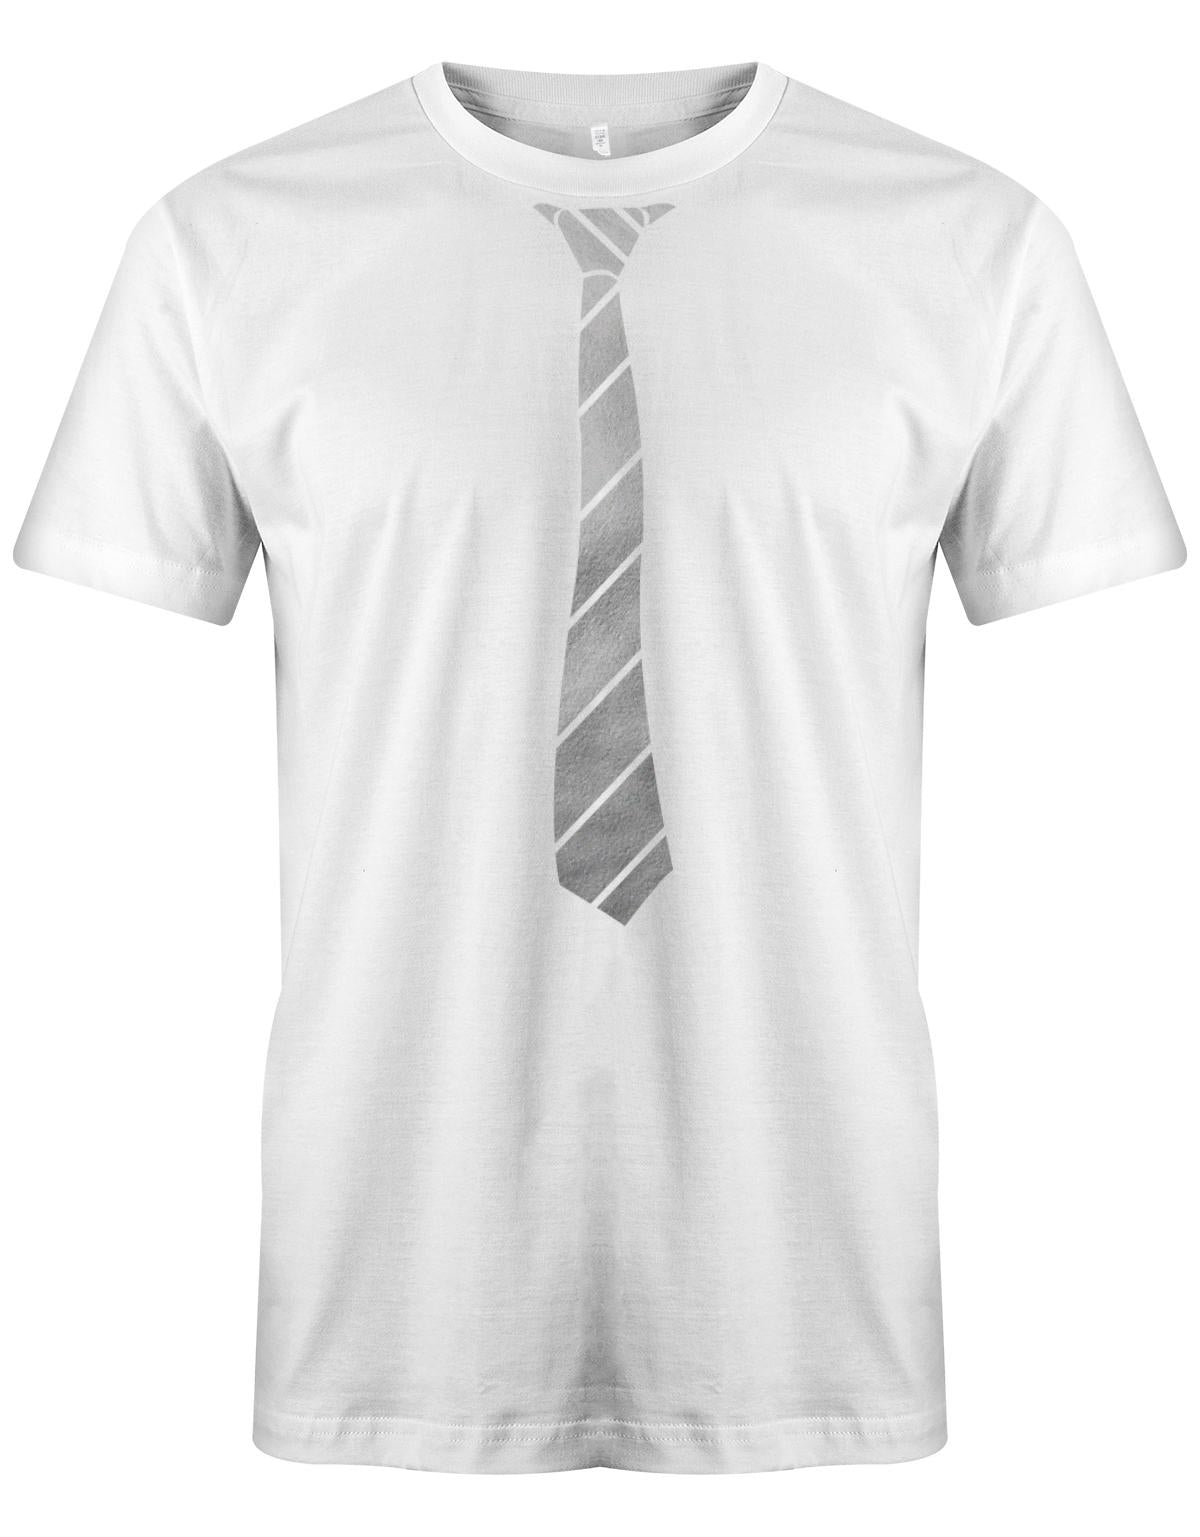 Krawatte-buisness-Herren-Shirt-JGA-Weiss-Silber